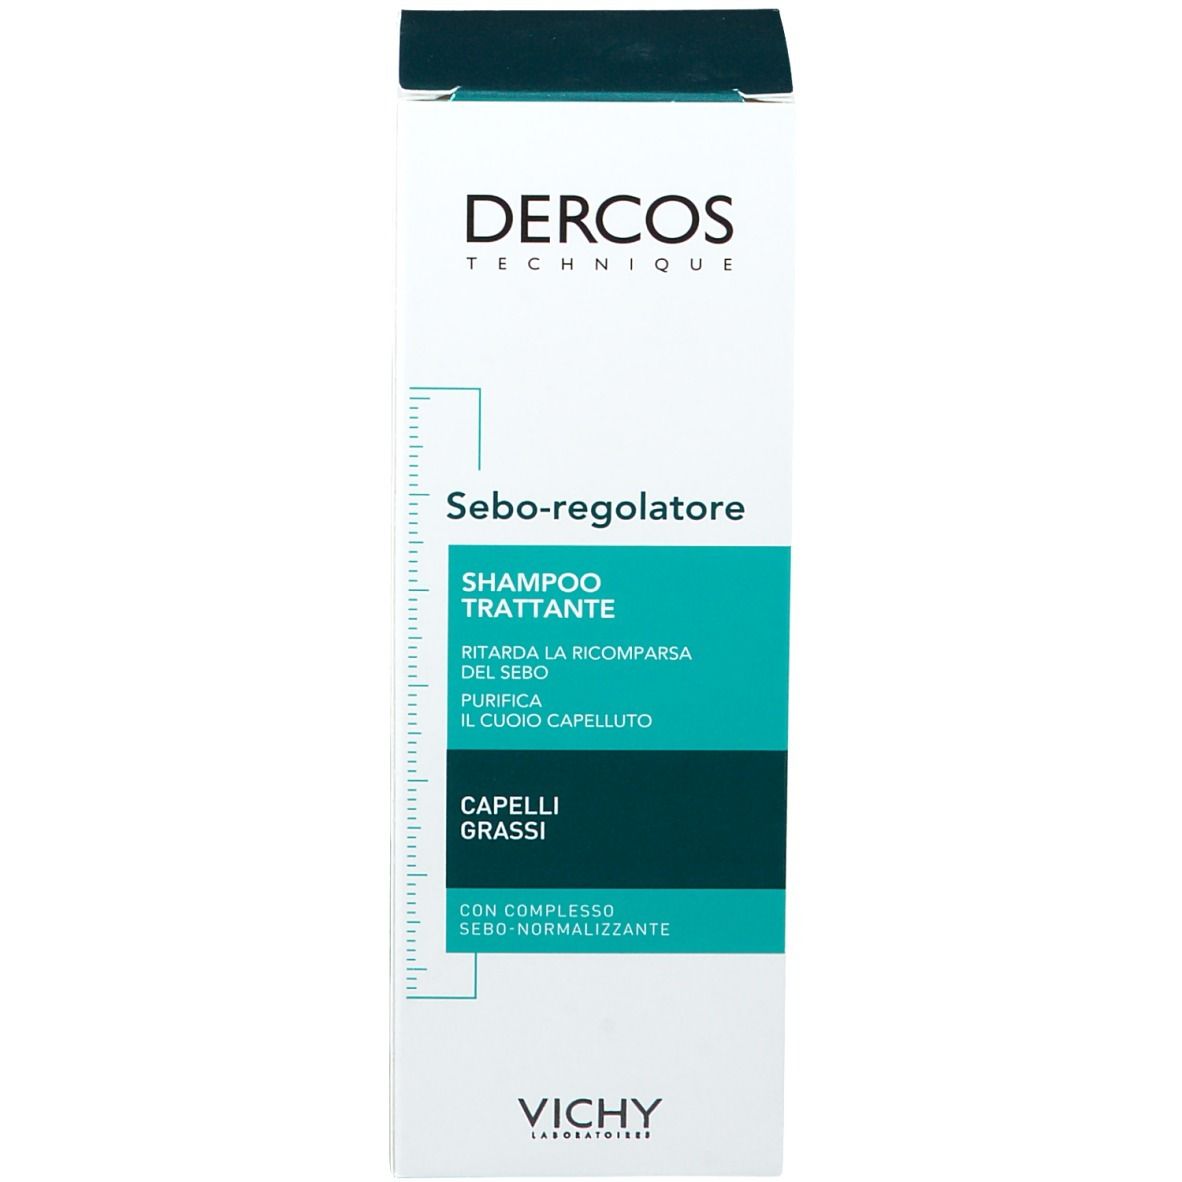 Vichy Dercos Shampoo Sebo Regolatore trattante Capelli grassi 200 ml